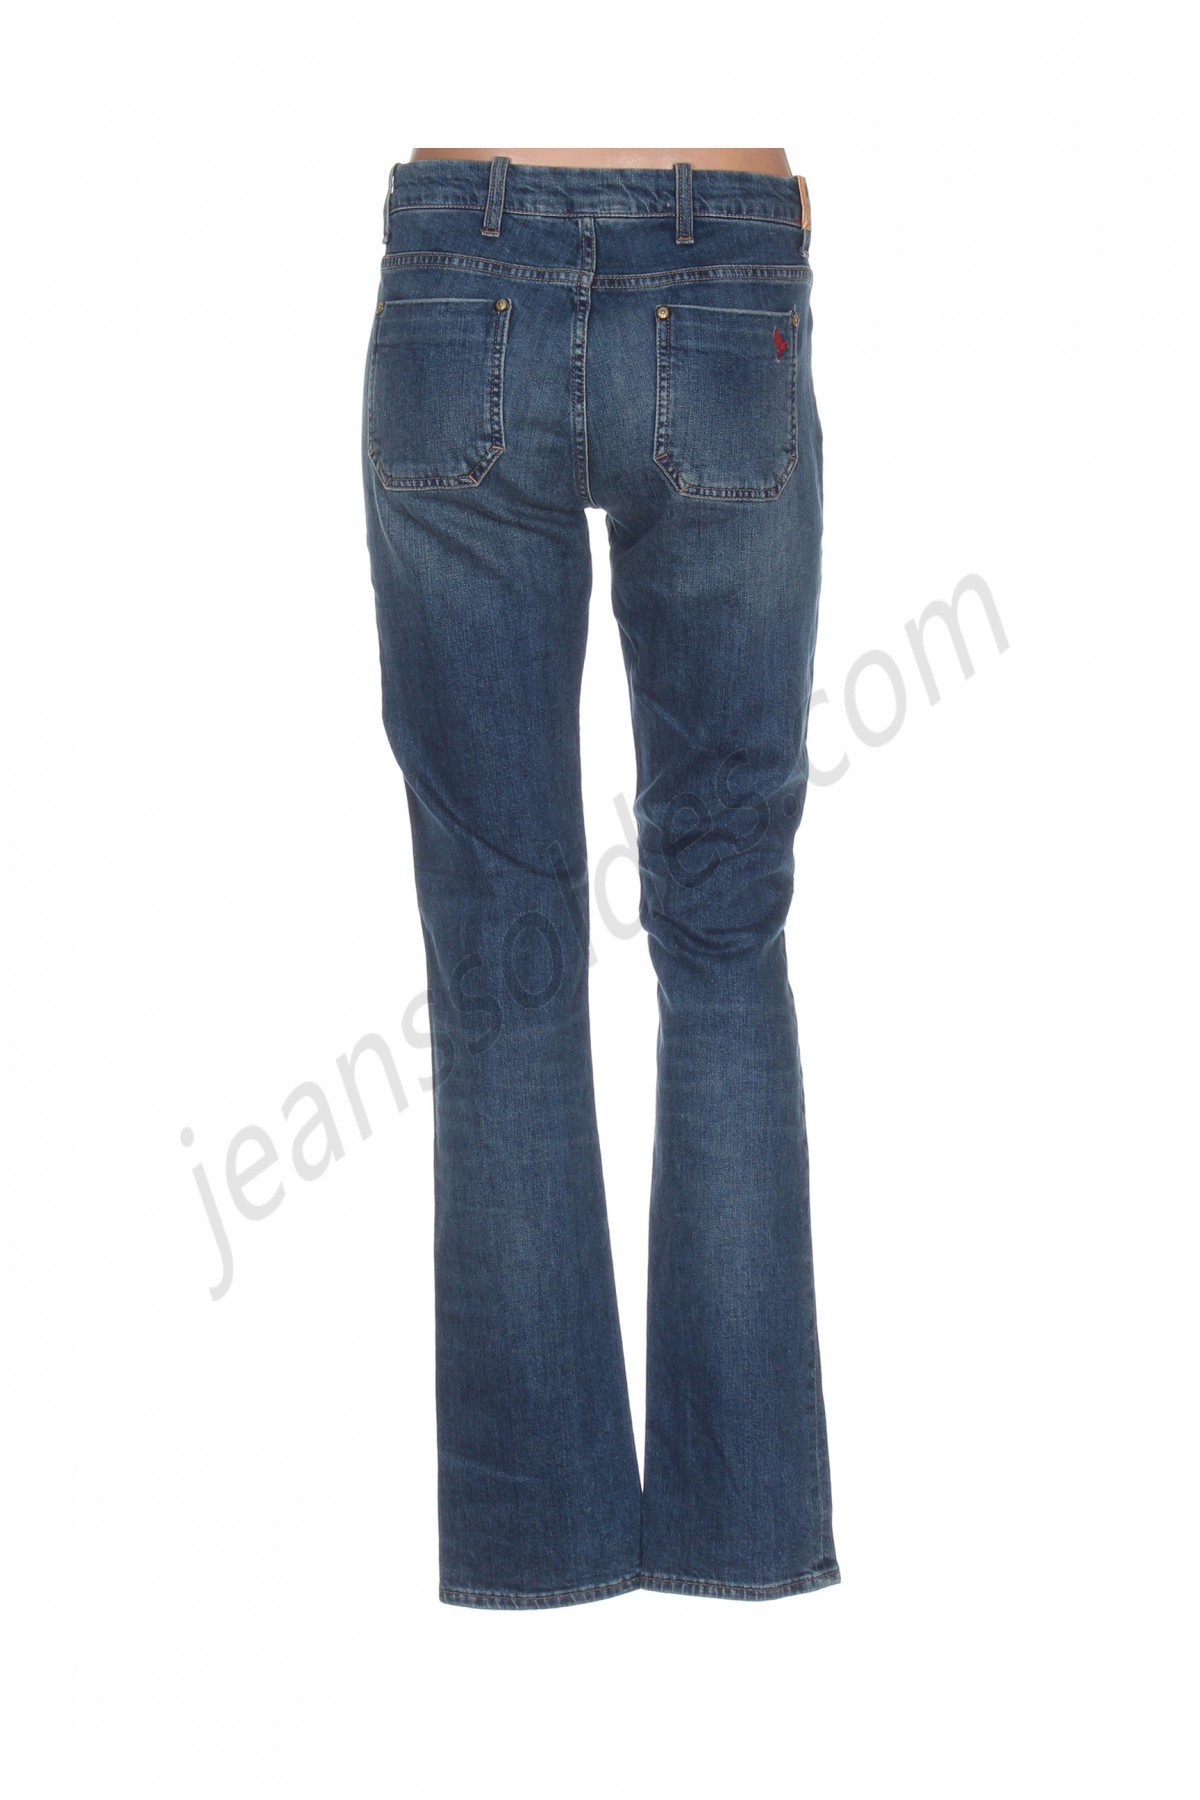 mih jeans-Jeans coupe droite prix d’amis - -1